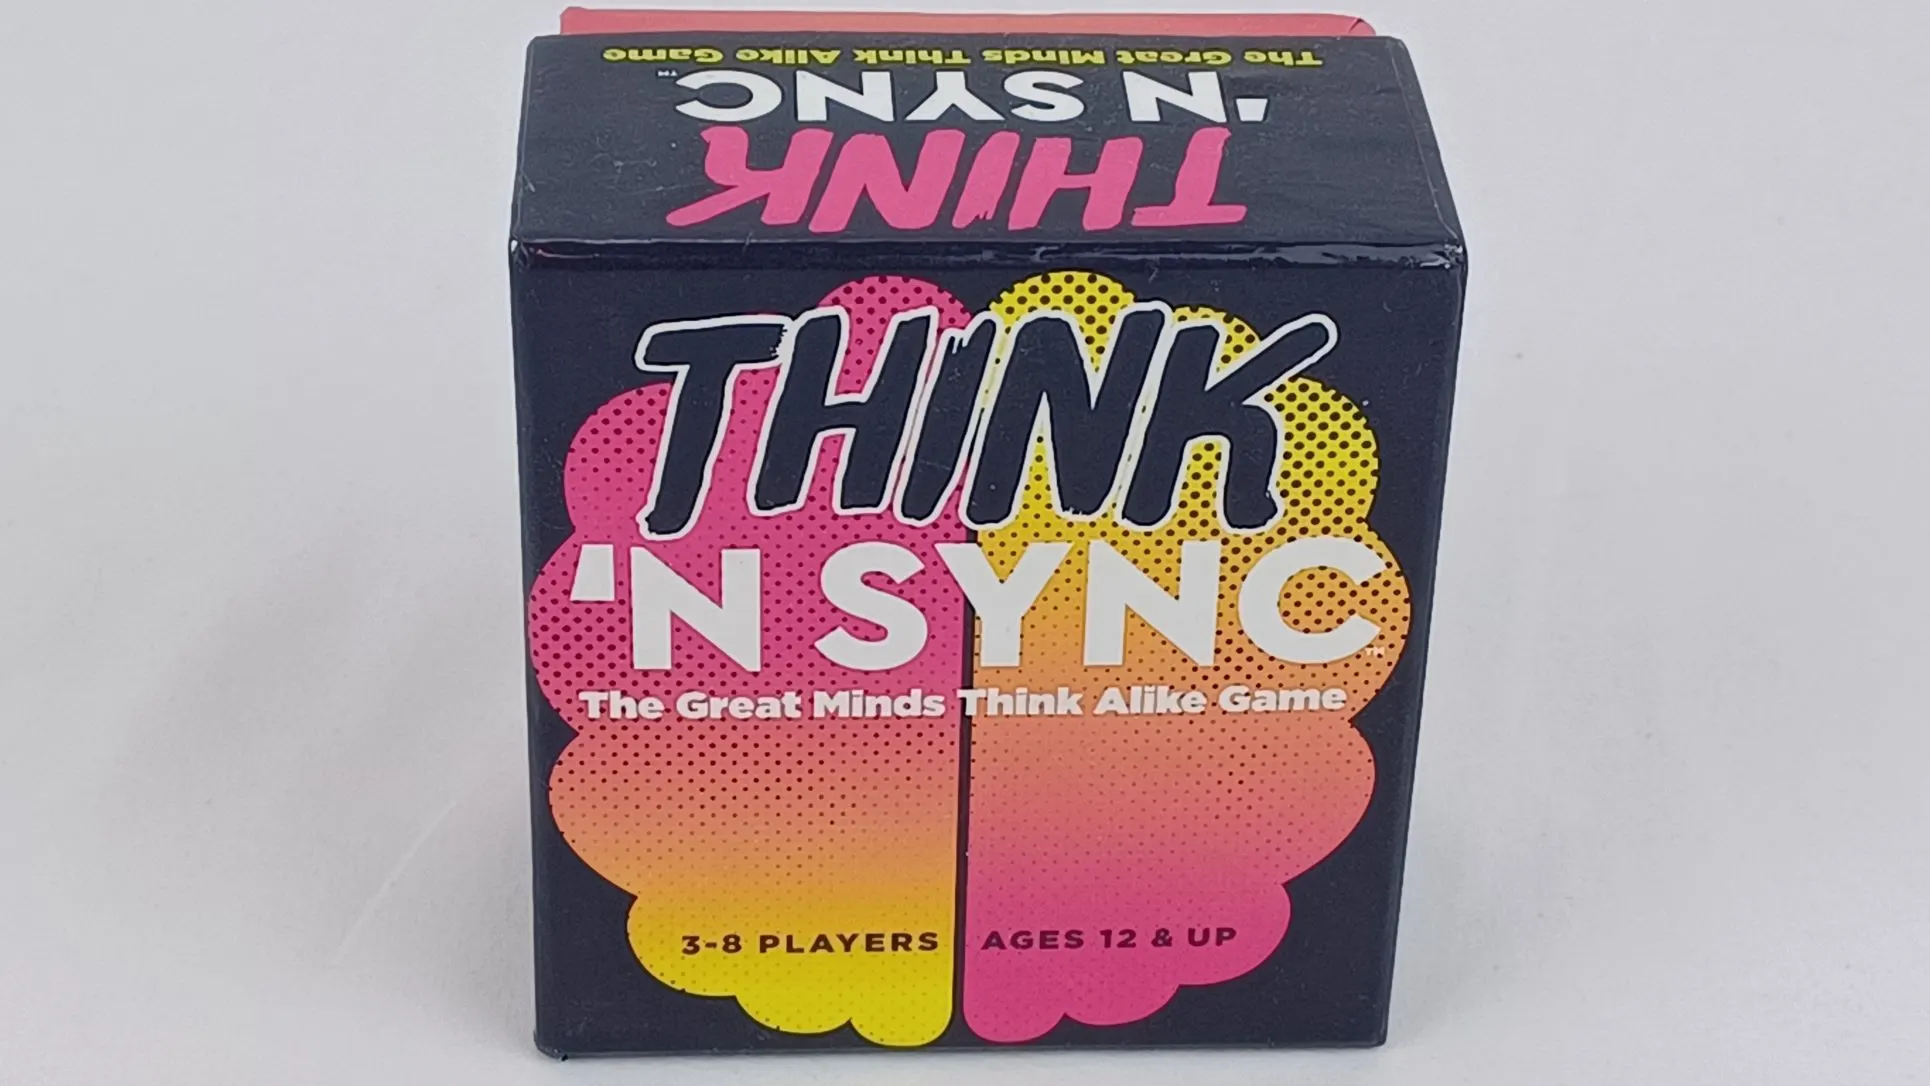 Box for Think 'n Sync